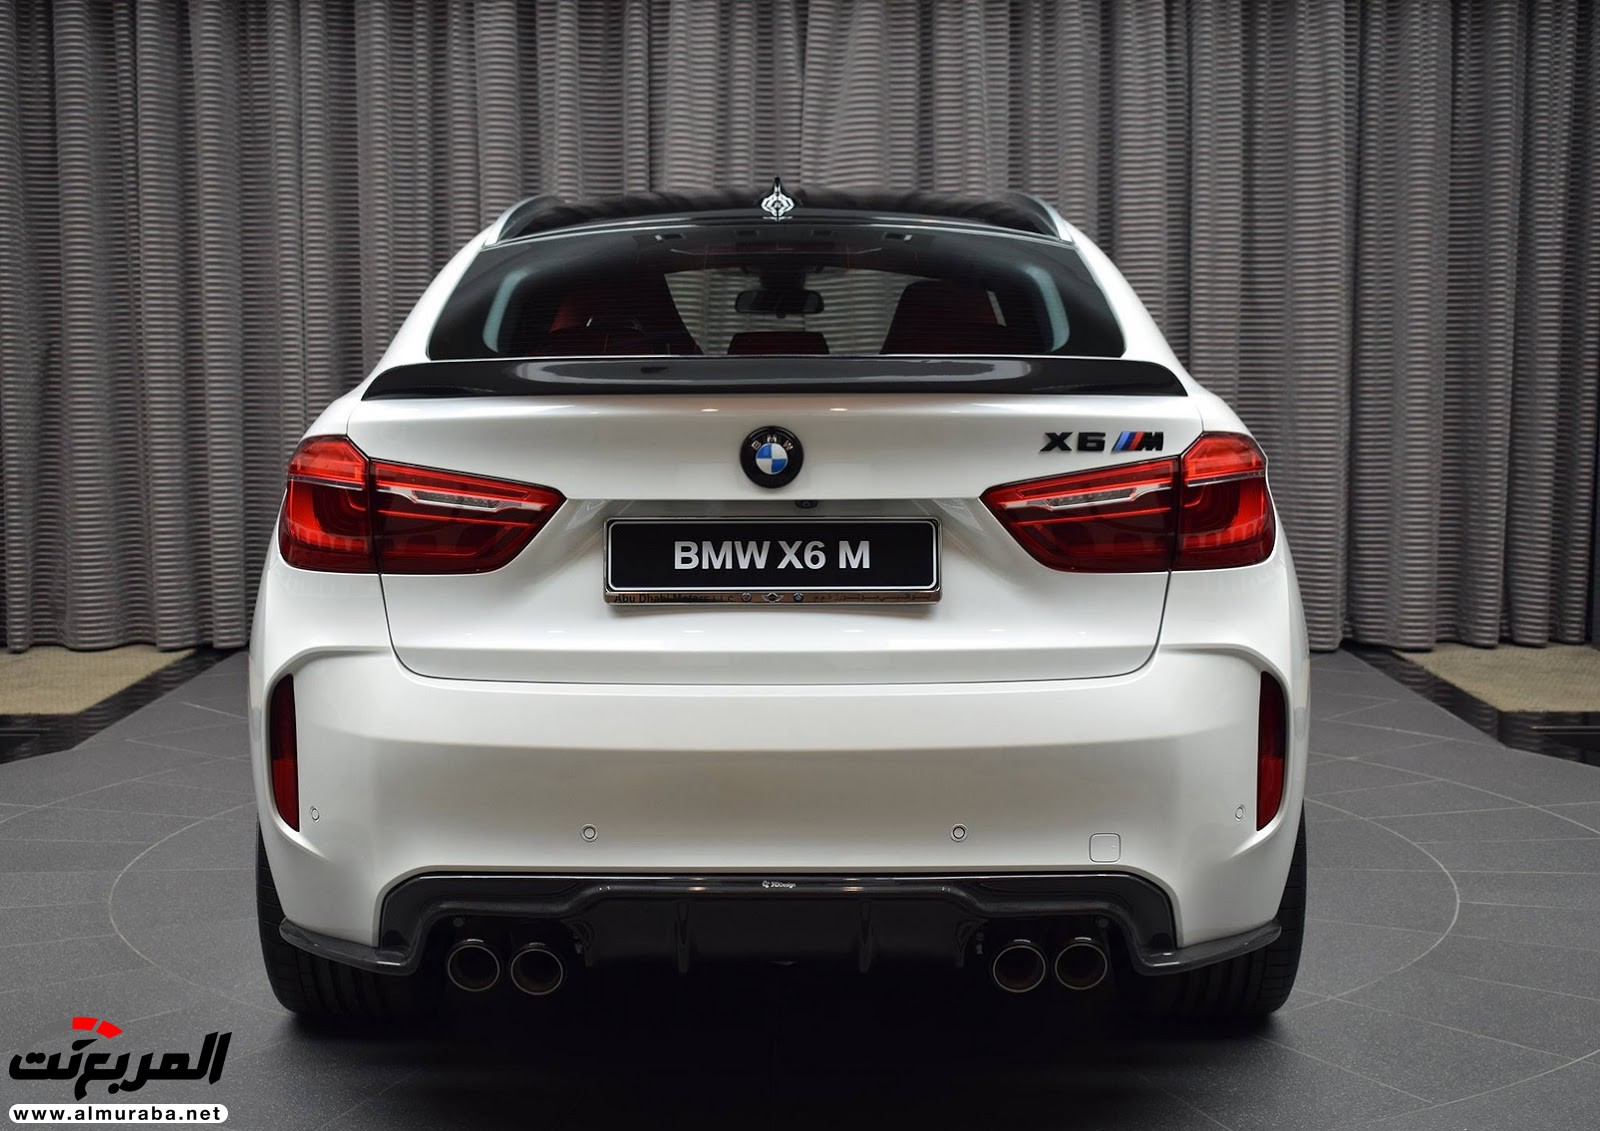 "بي إم دبليو" X6 M عالية الأداء معدّلة بتصاميم 3D معروضة بأبو ظبي BMW 30